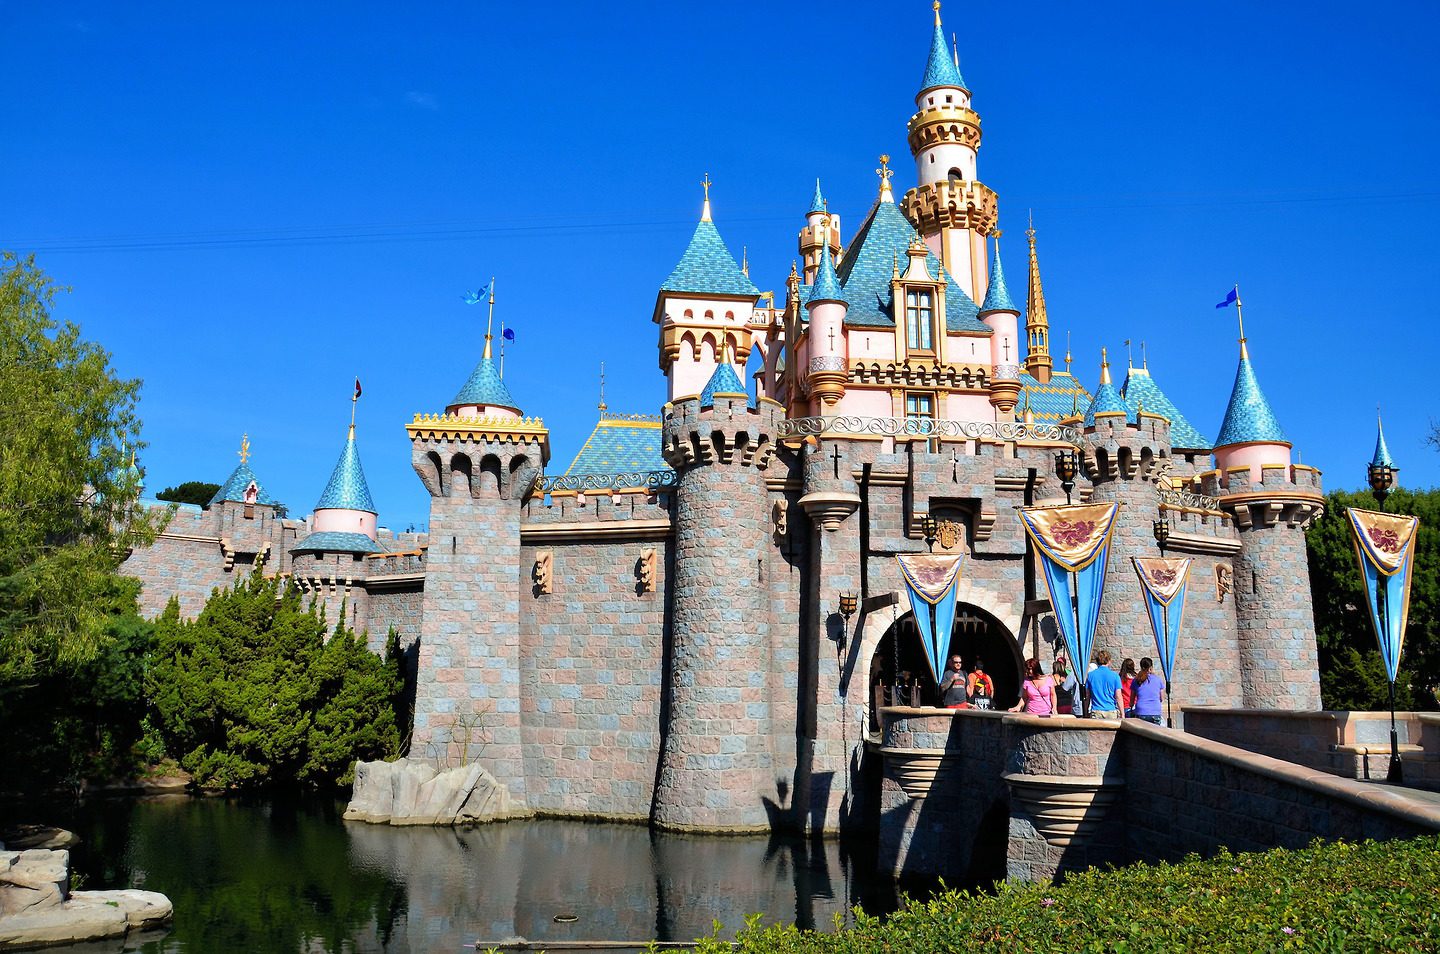 Lâu đài được dùng làm hình mẫu trong công viên Disneyland